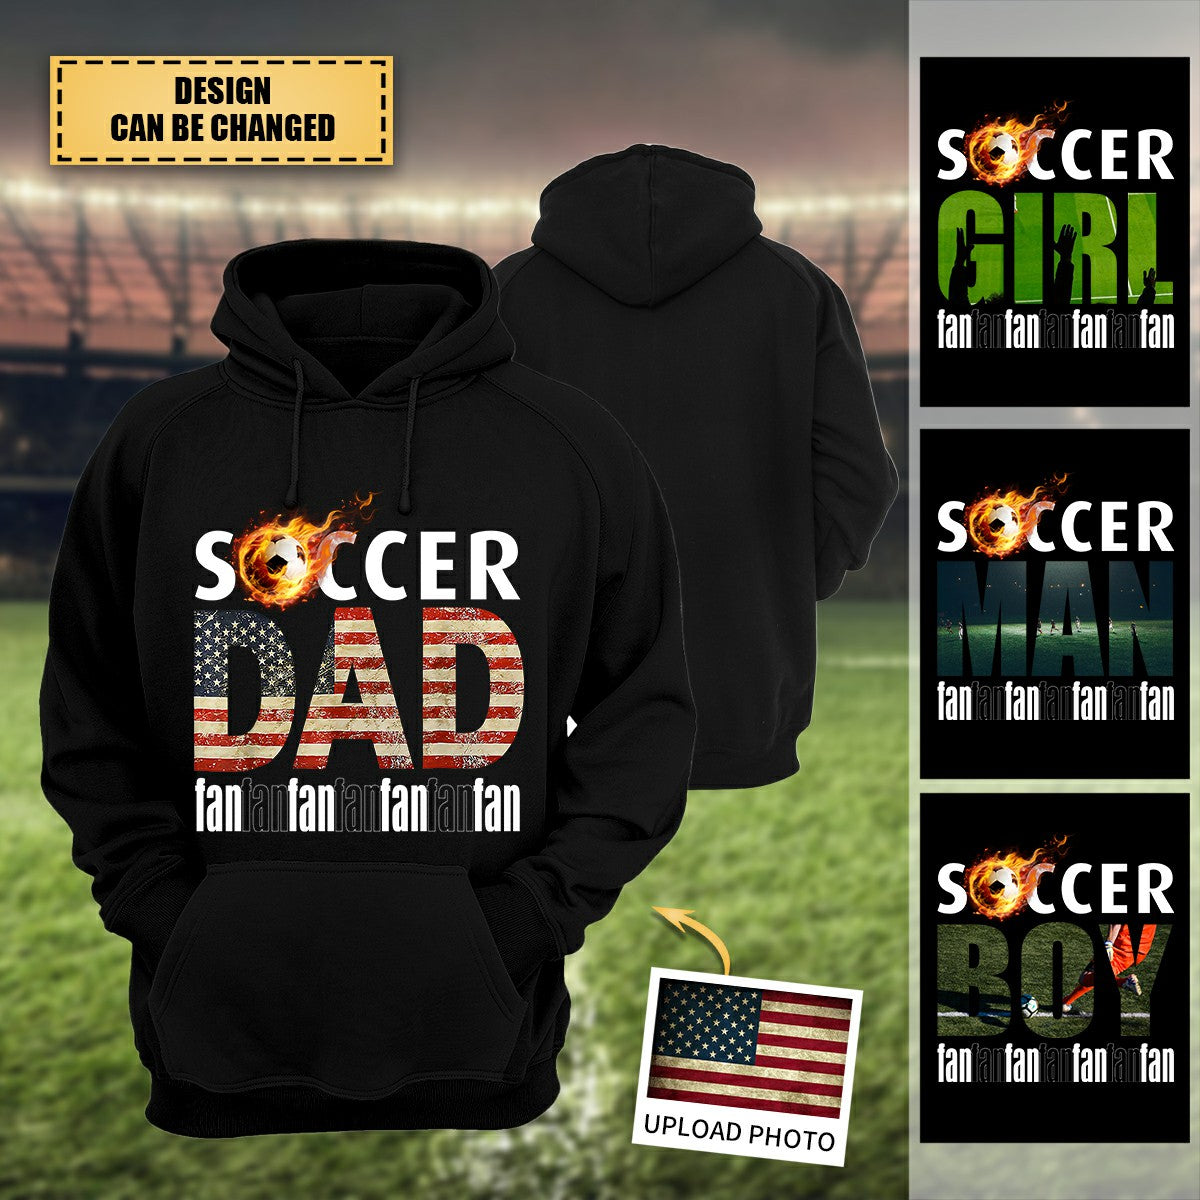 Personalized Hoodie Soccer Fan Sweatshirt